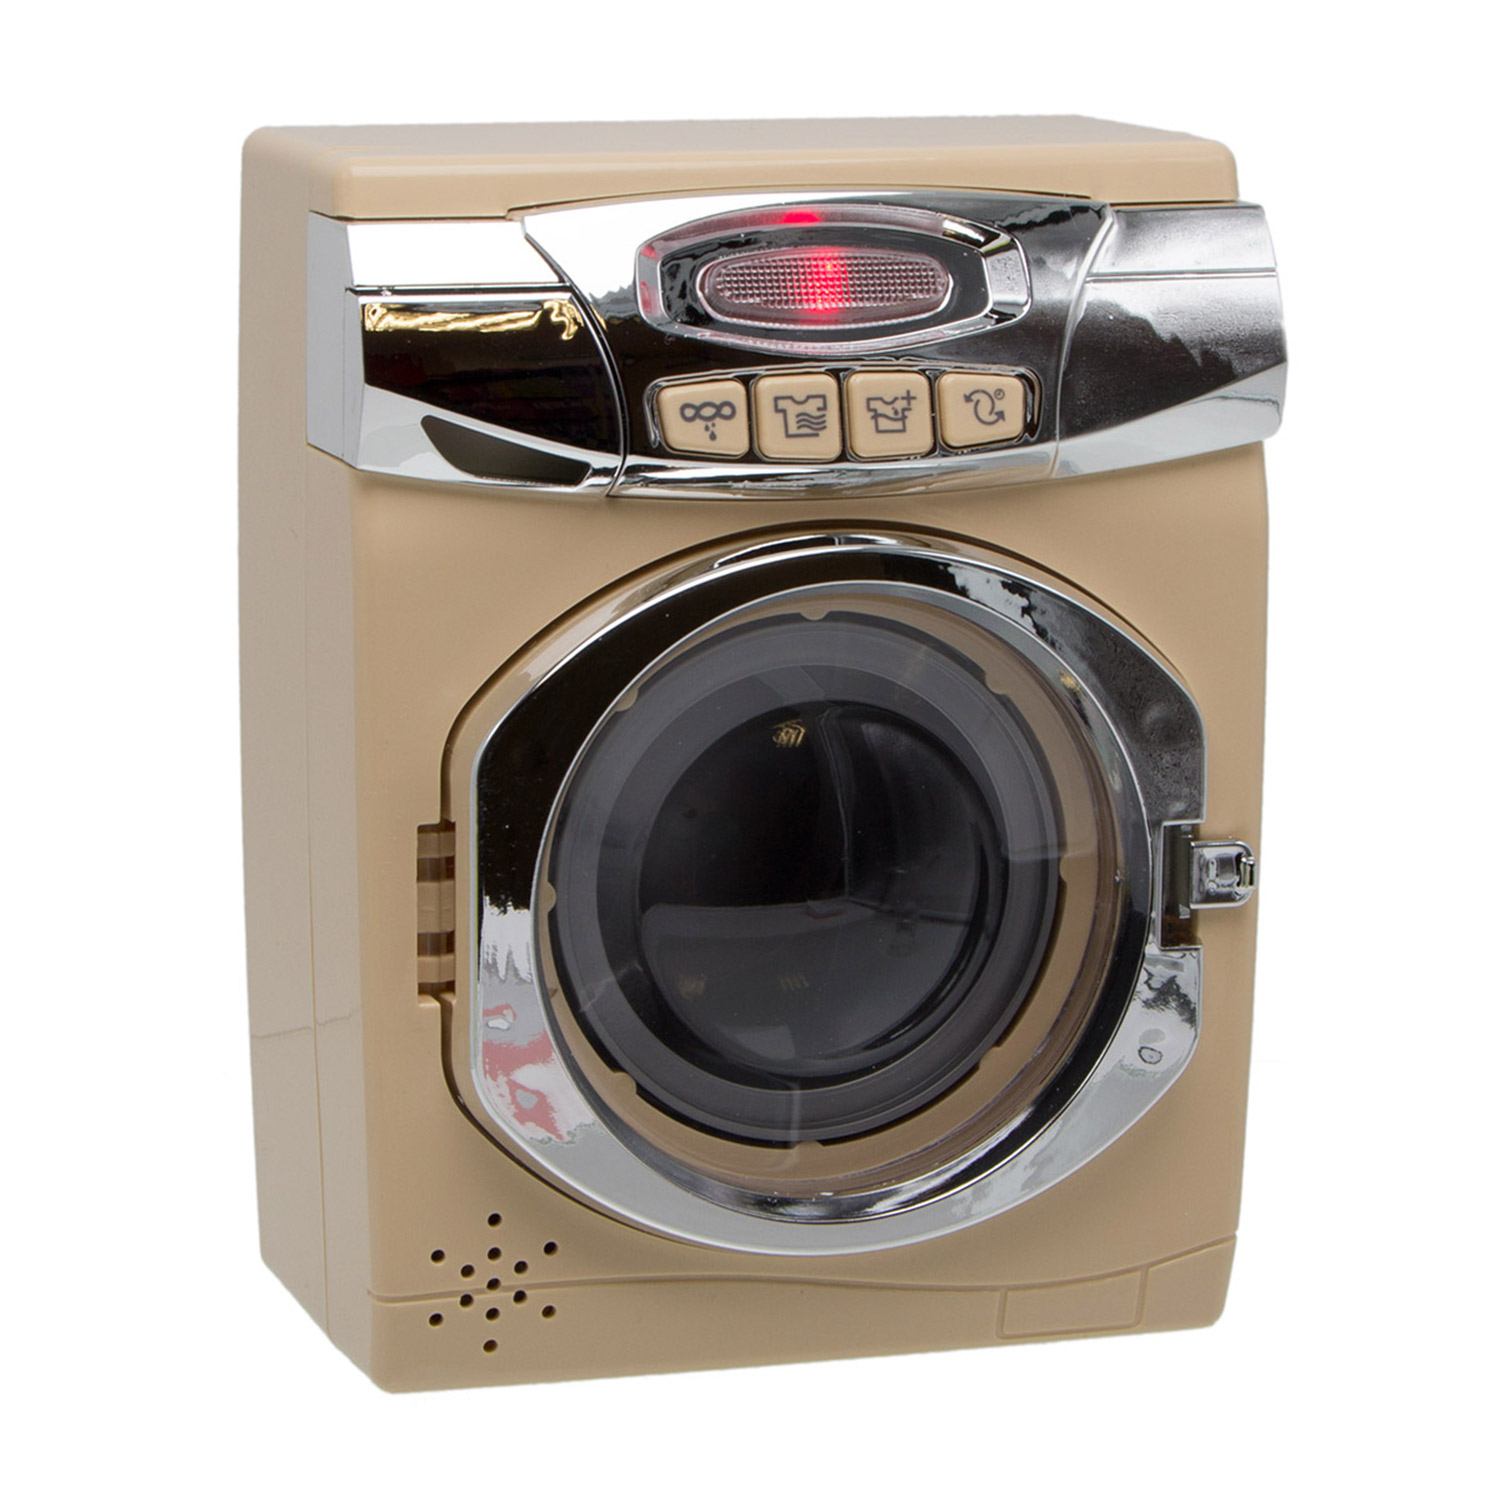 Игрушечная стиральная машинка S+S игровой набор со светом и звуком - фото 1